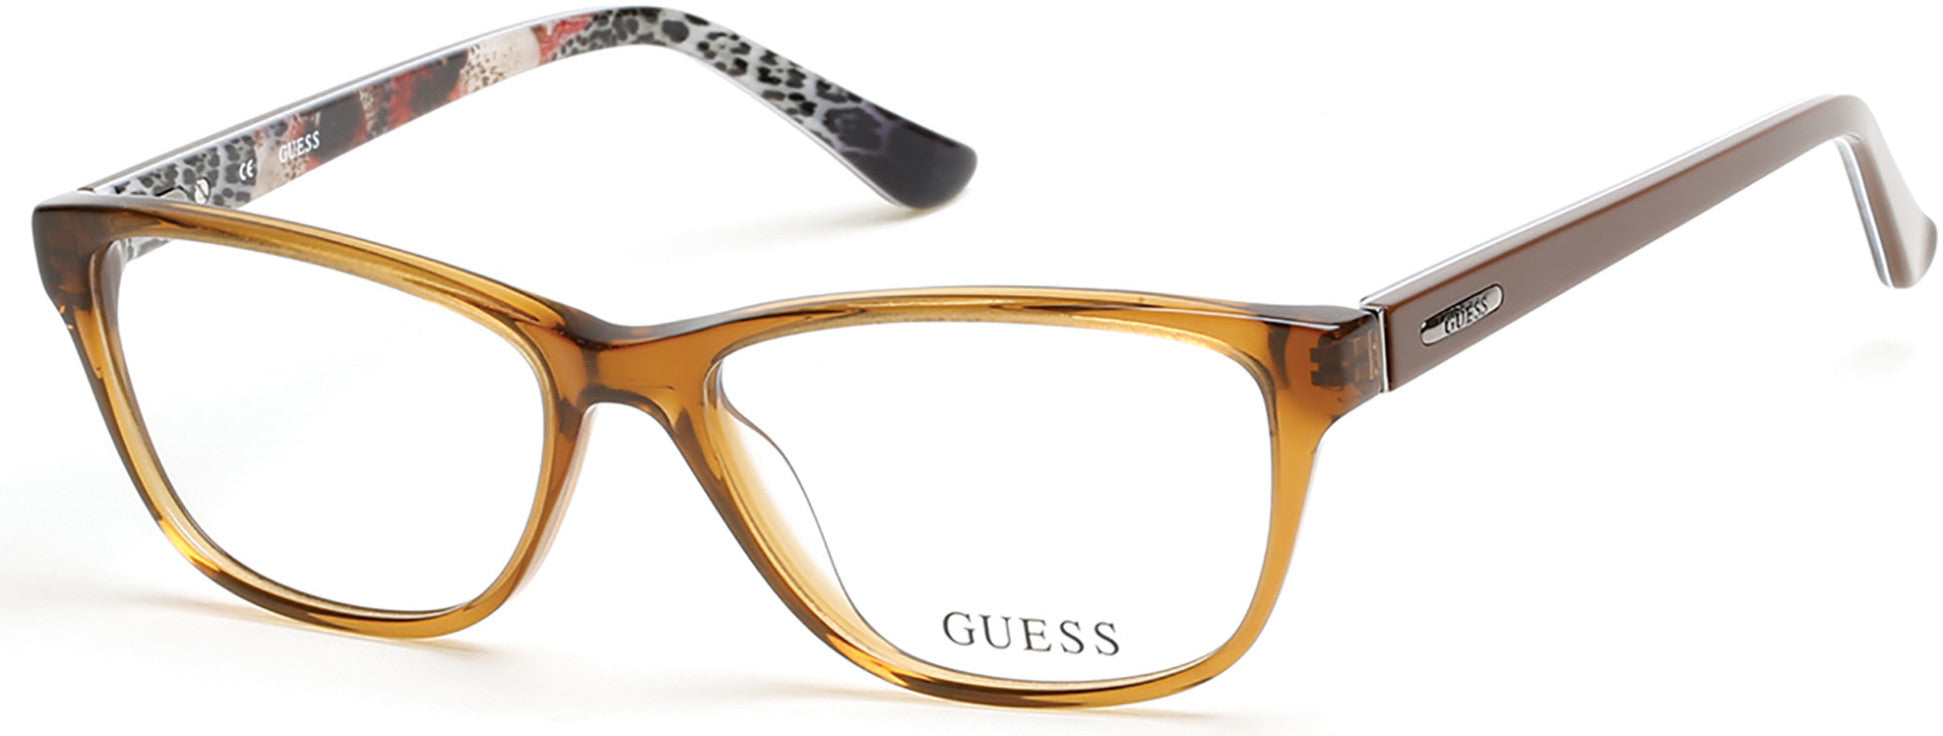 Guess GU2513 Rectangular Eyeglasses 047-047 - Light Brown/other